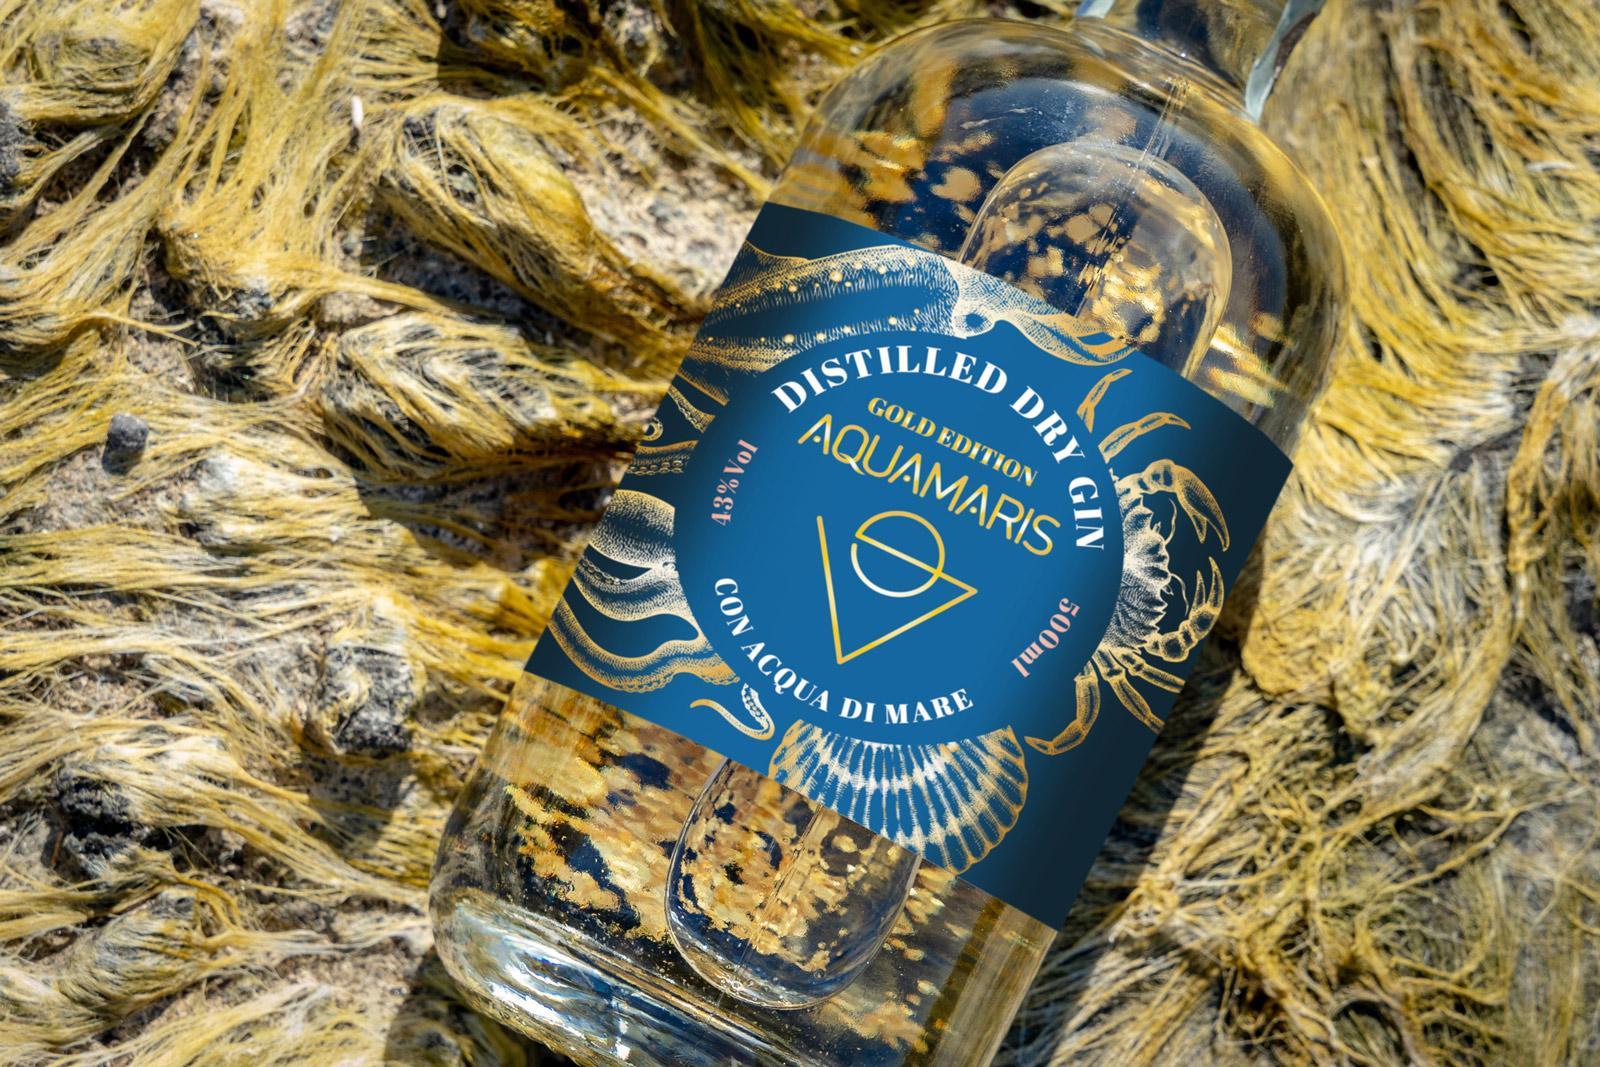 aquamaris aquamaris gold edition distilled dry gin con acqua di mare 50 cl